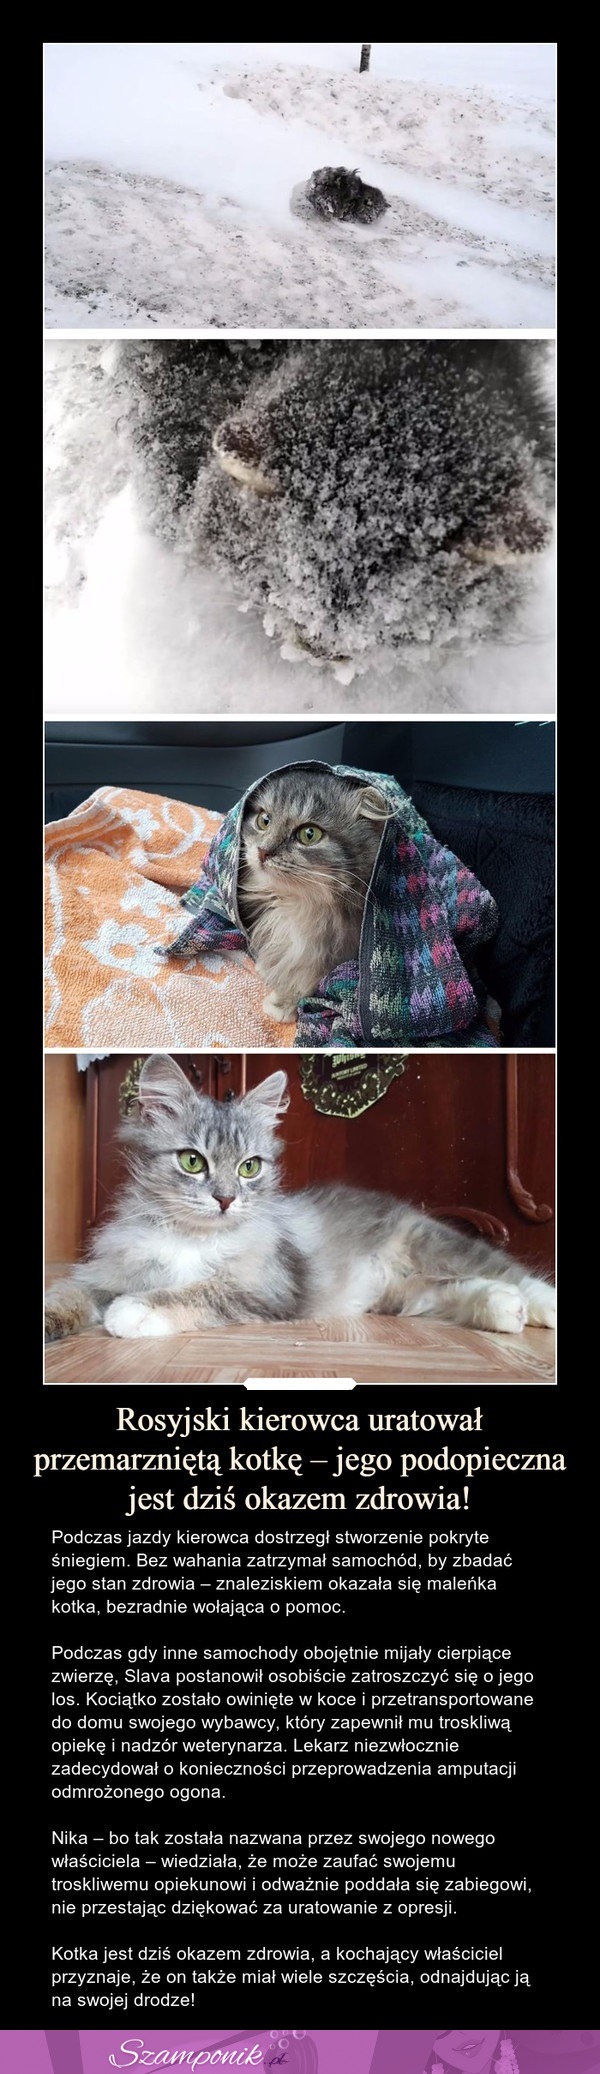 Rosyjski kierowca uratował przemarzniętą kotkę - jego podopieczna jest dziś okazem zdrowia!